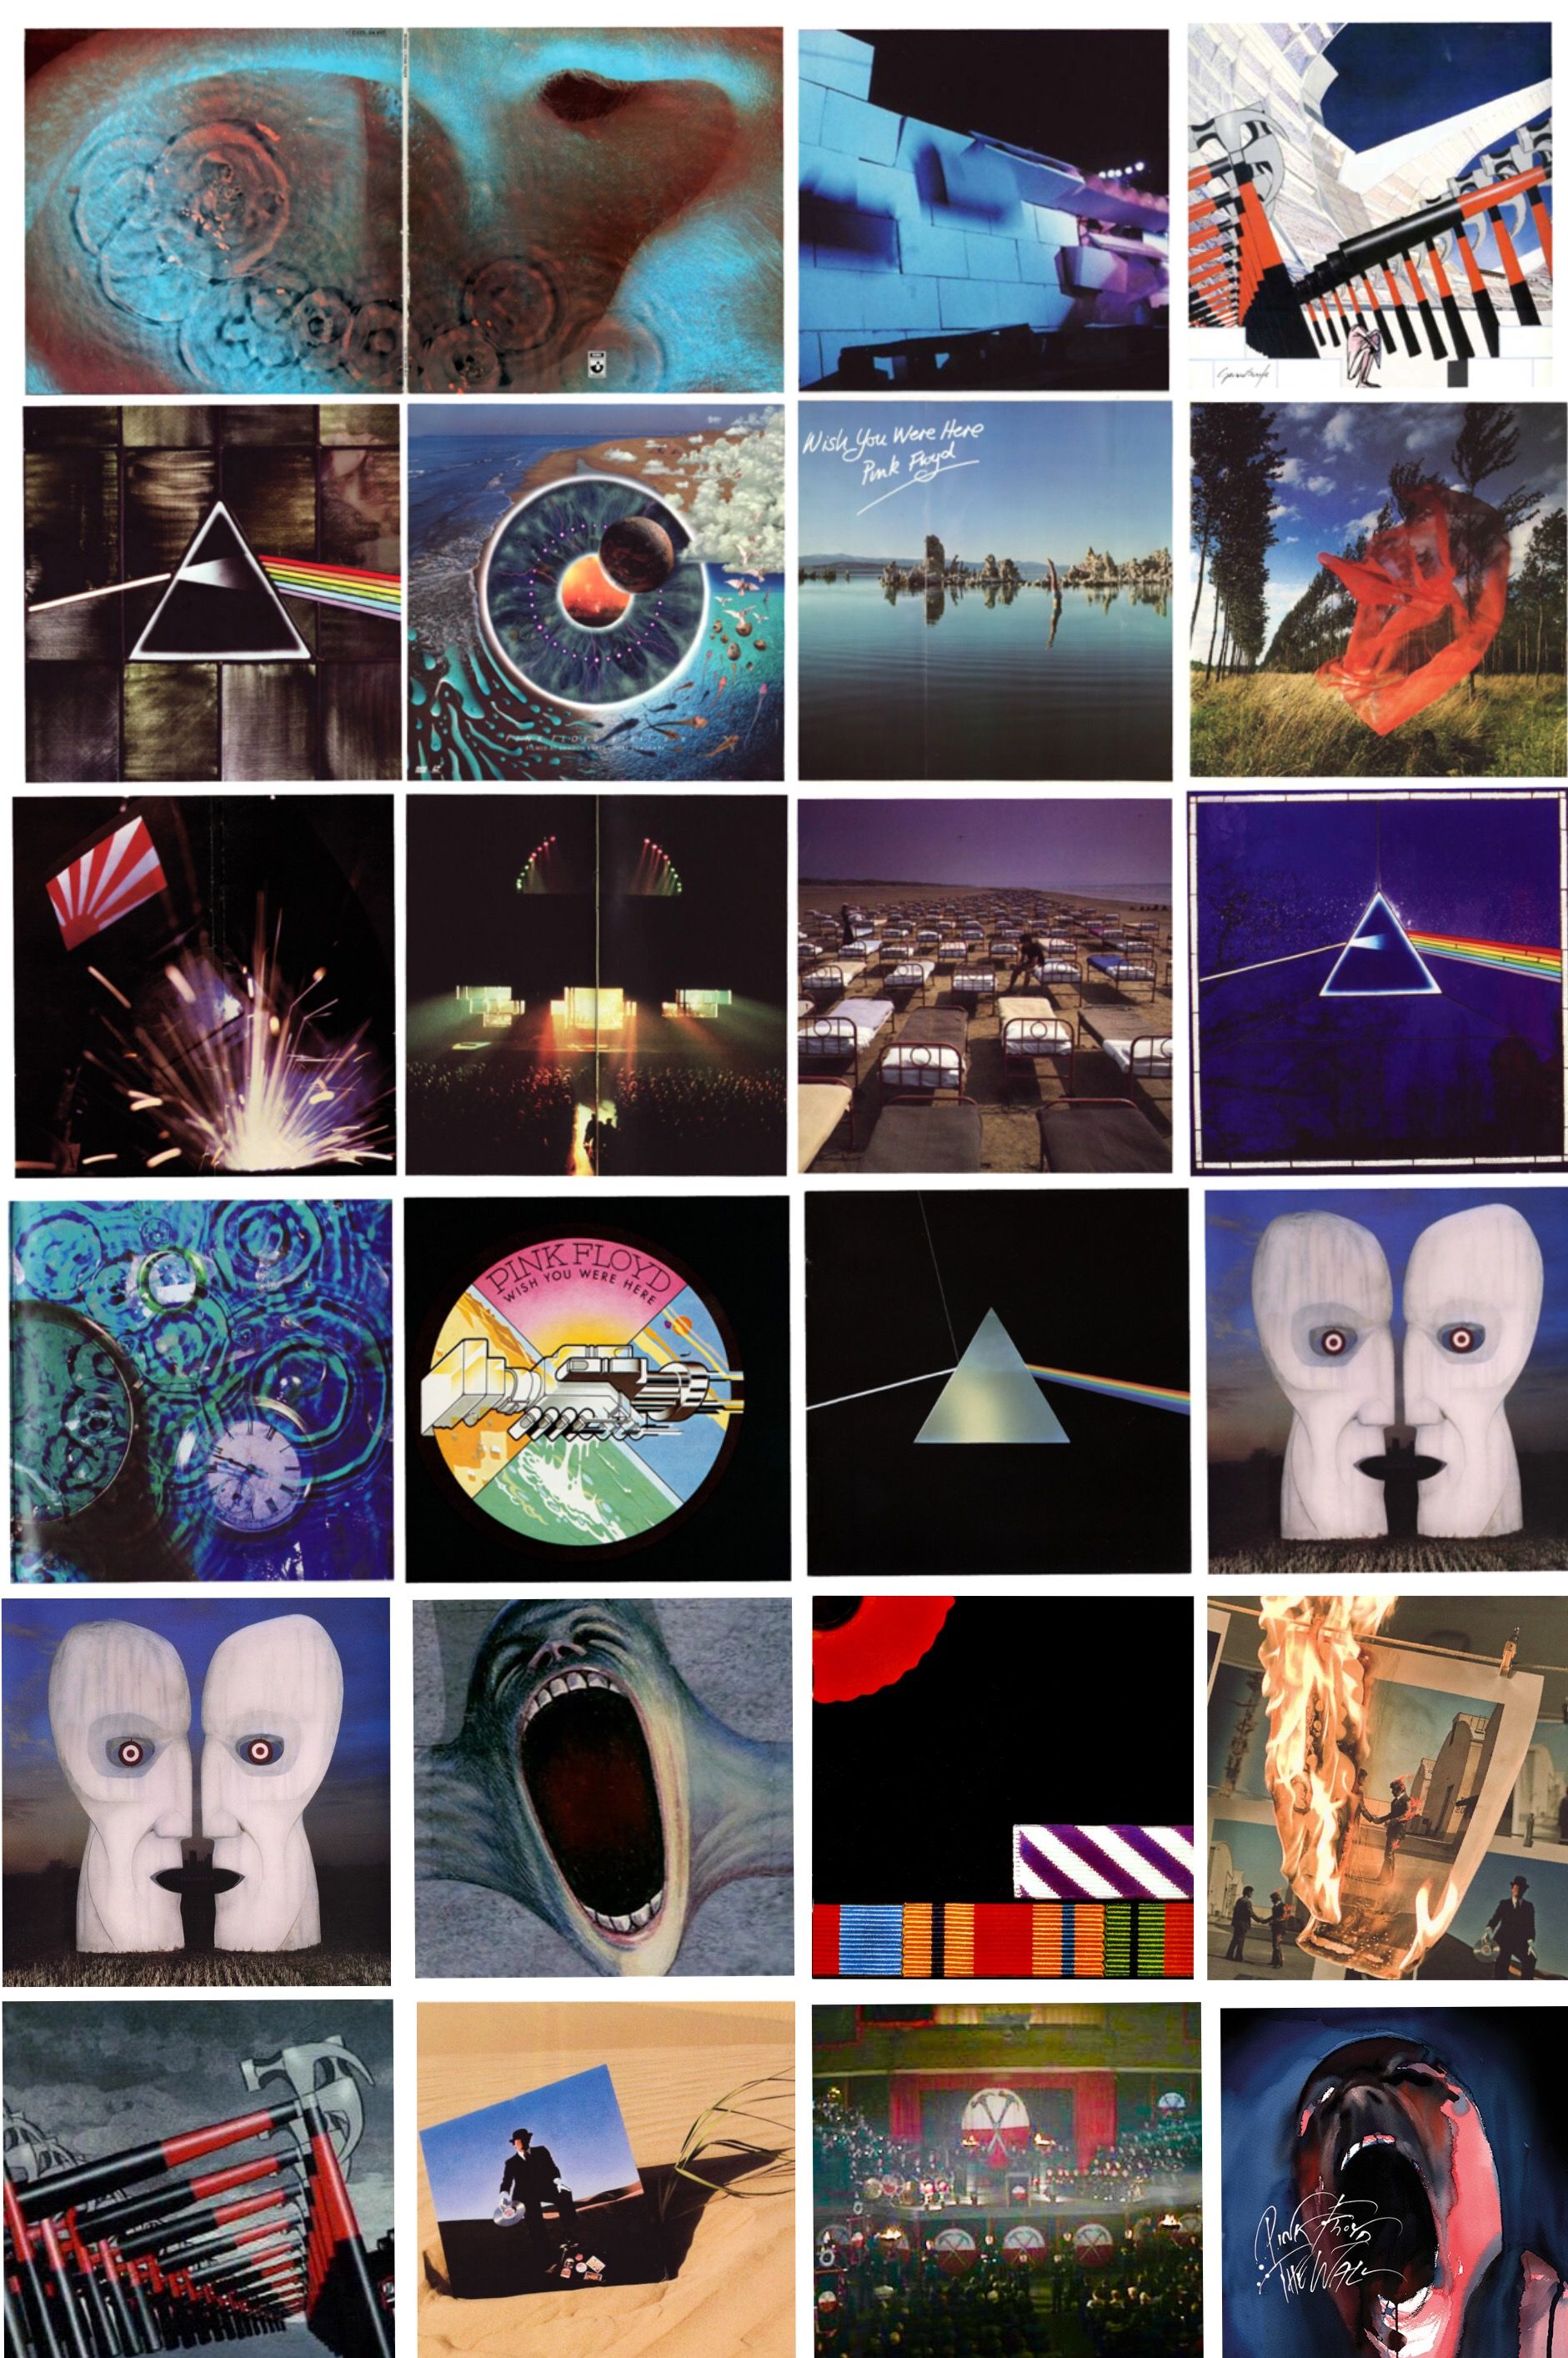 Pink Floyd Covers. Pink floyd wallpaper, Pink floyd album covers, Pink floyd albums